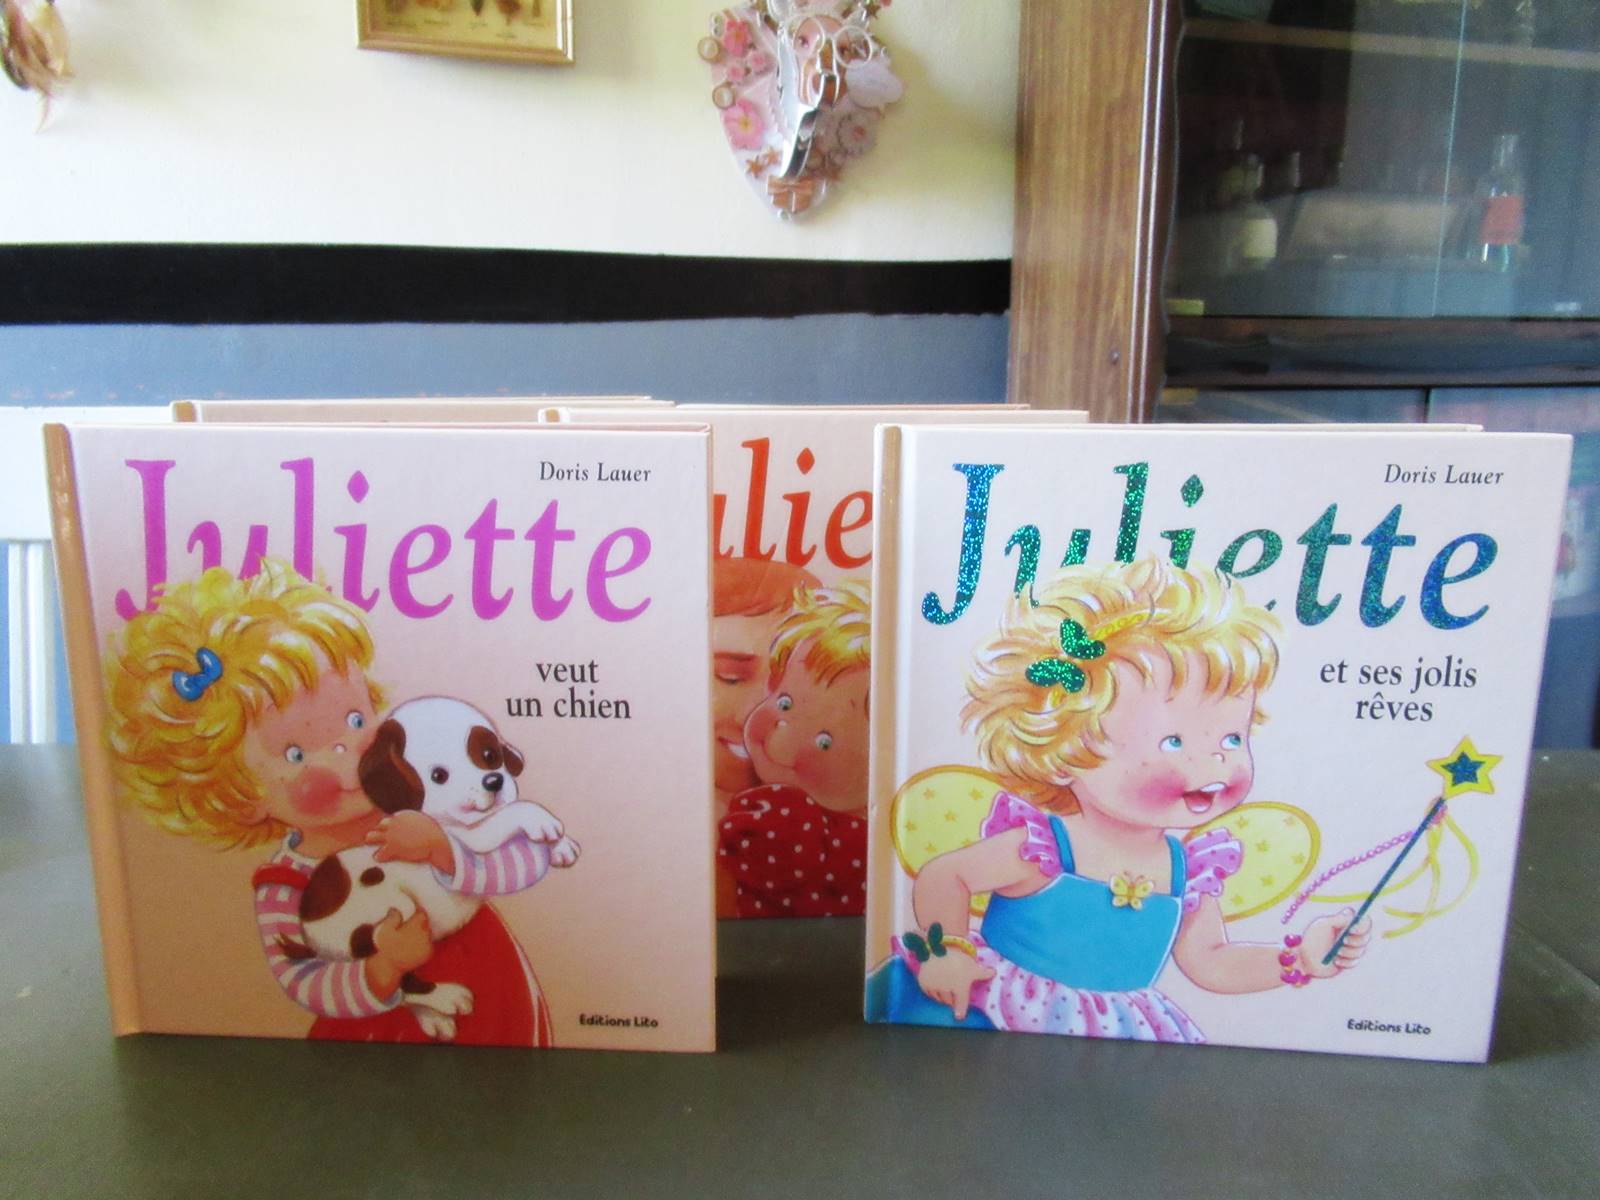 Juliette livre en cursive editions lito